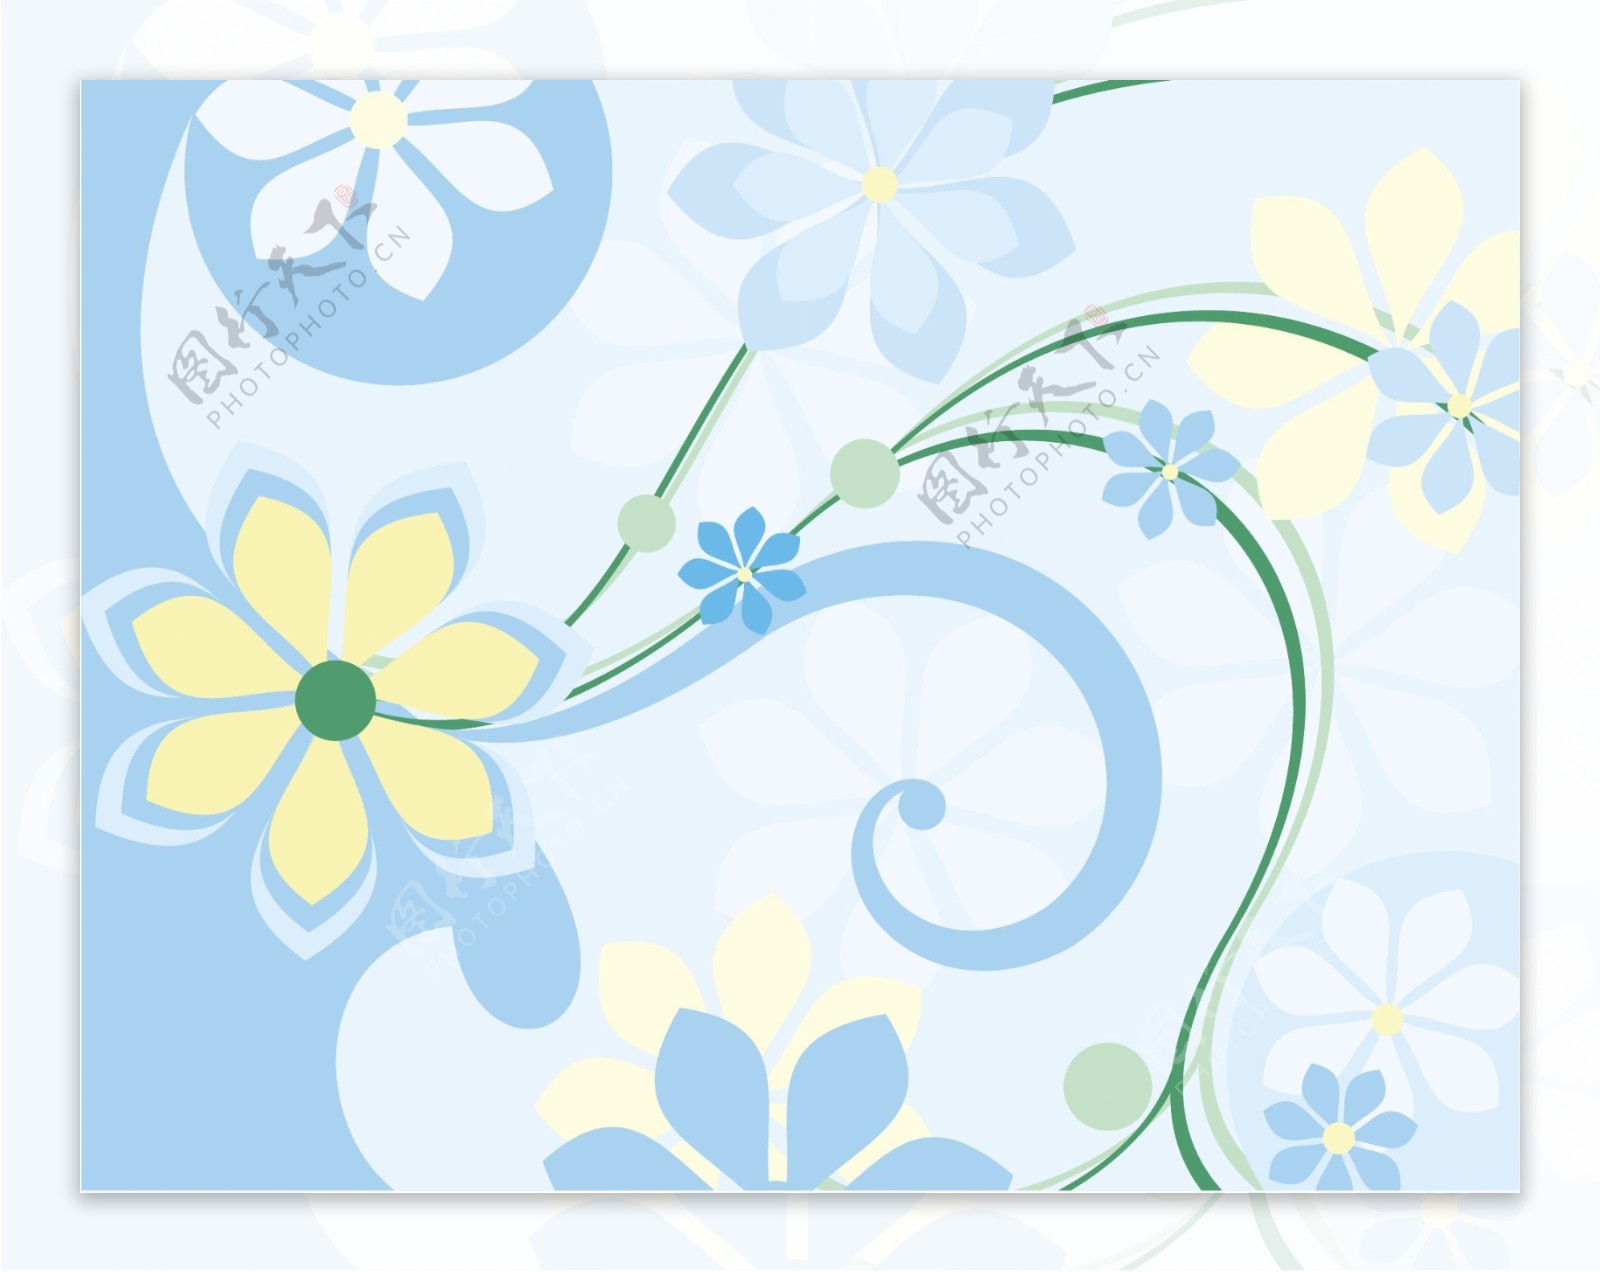 花卉花纹背景图案设计